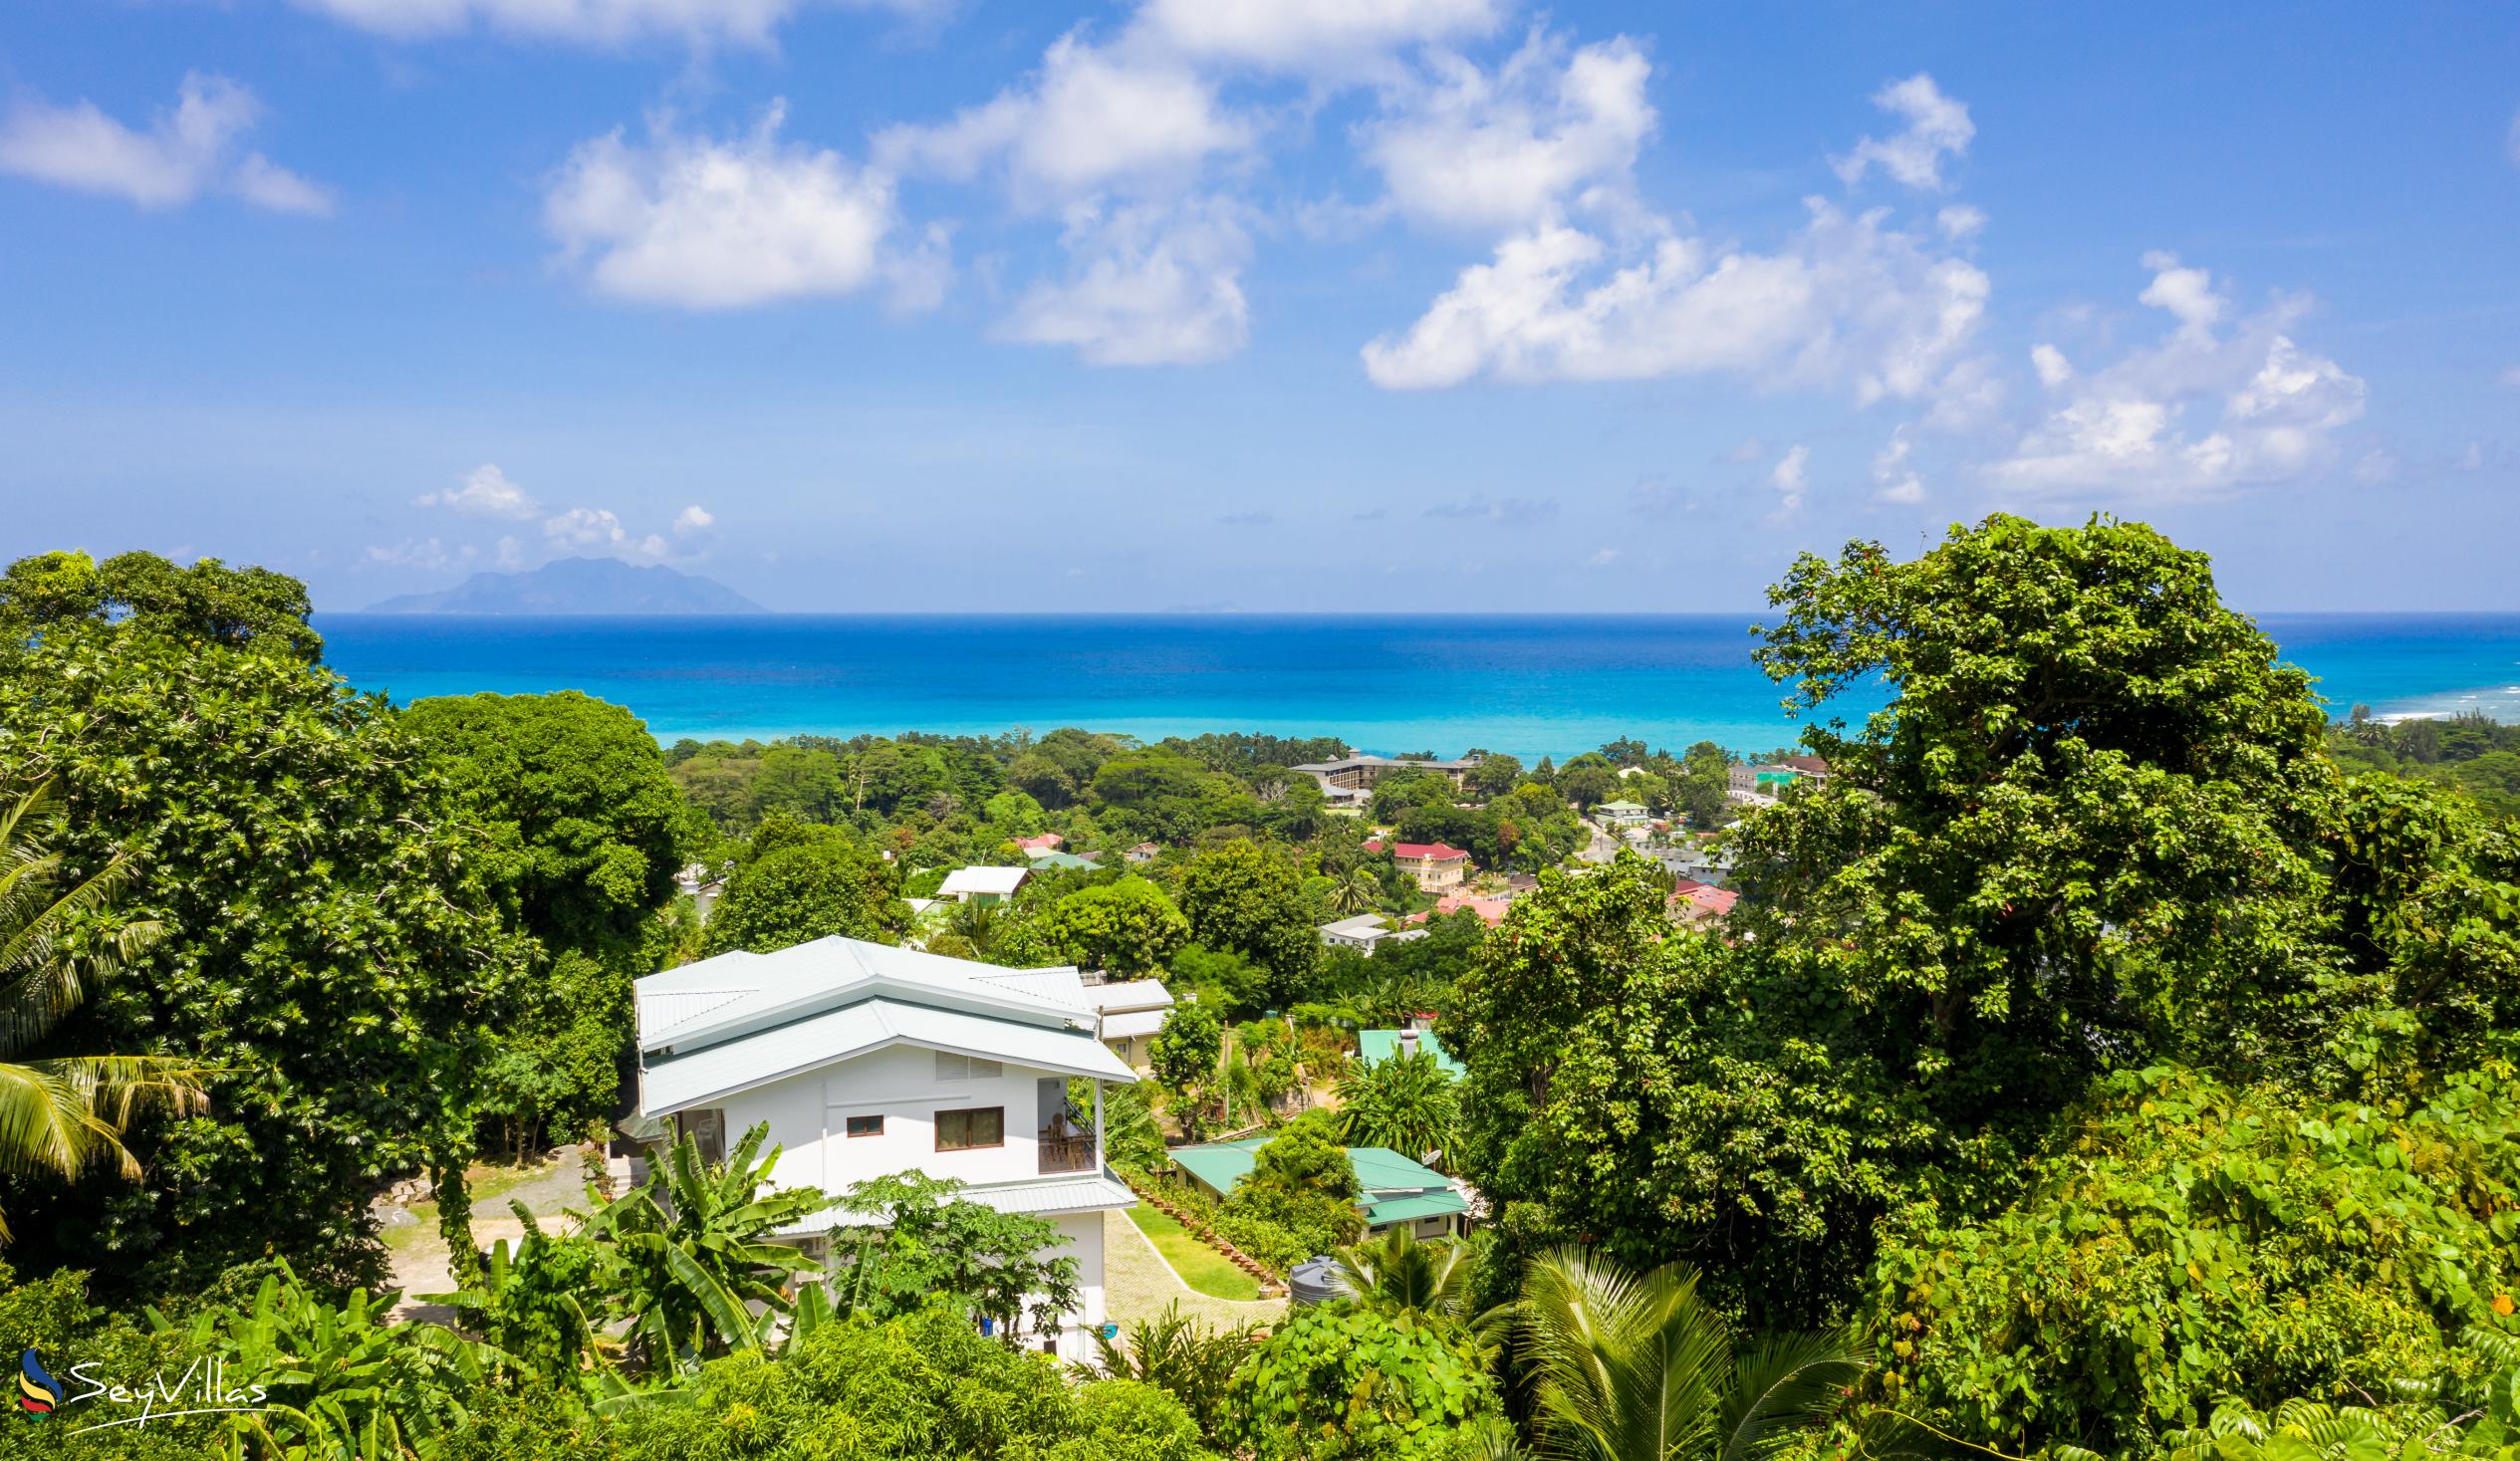 Photo 1: Tama's Holiday Apartments - Outdoor area - Mahé (Seychelles)